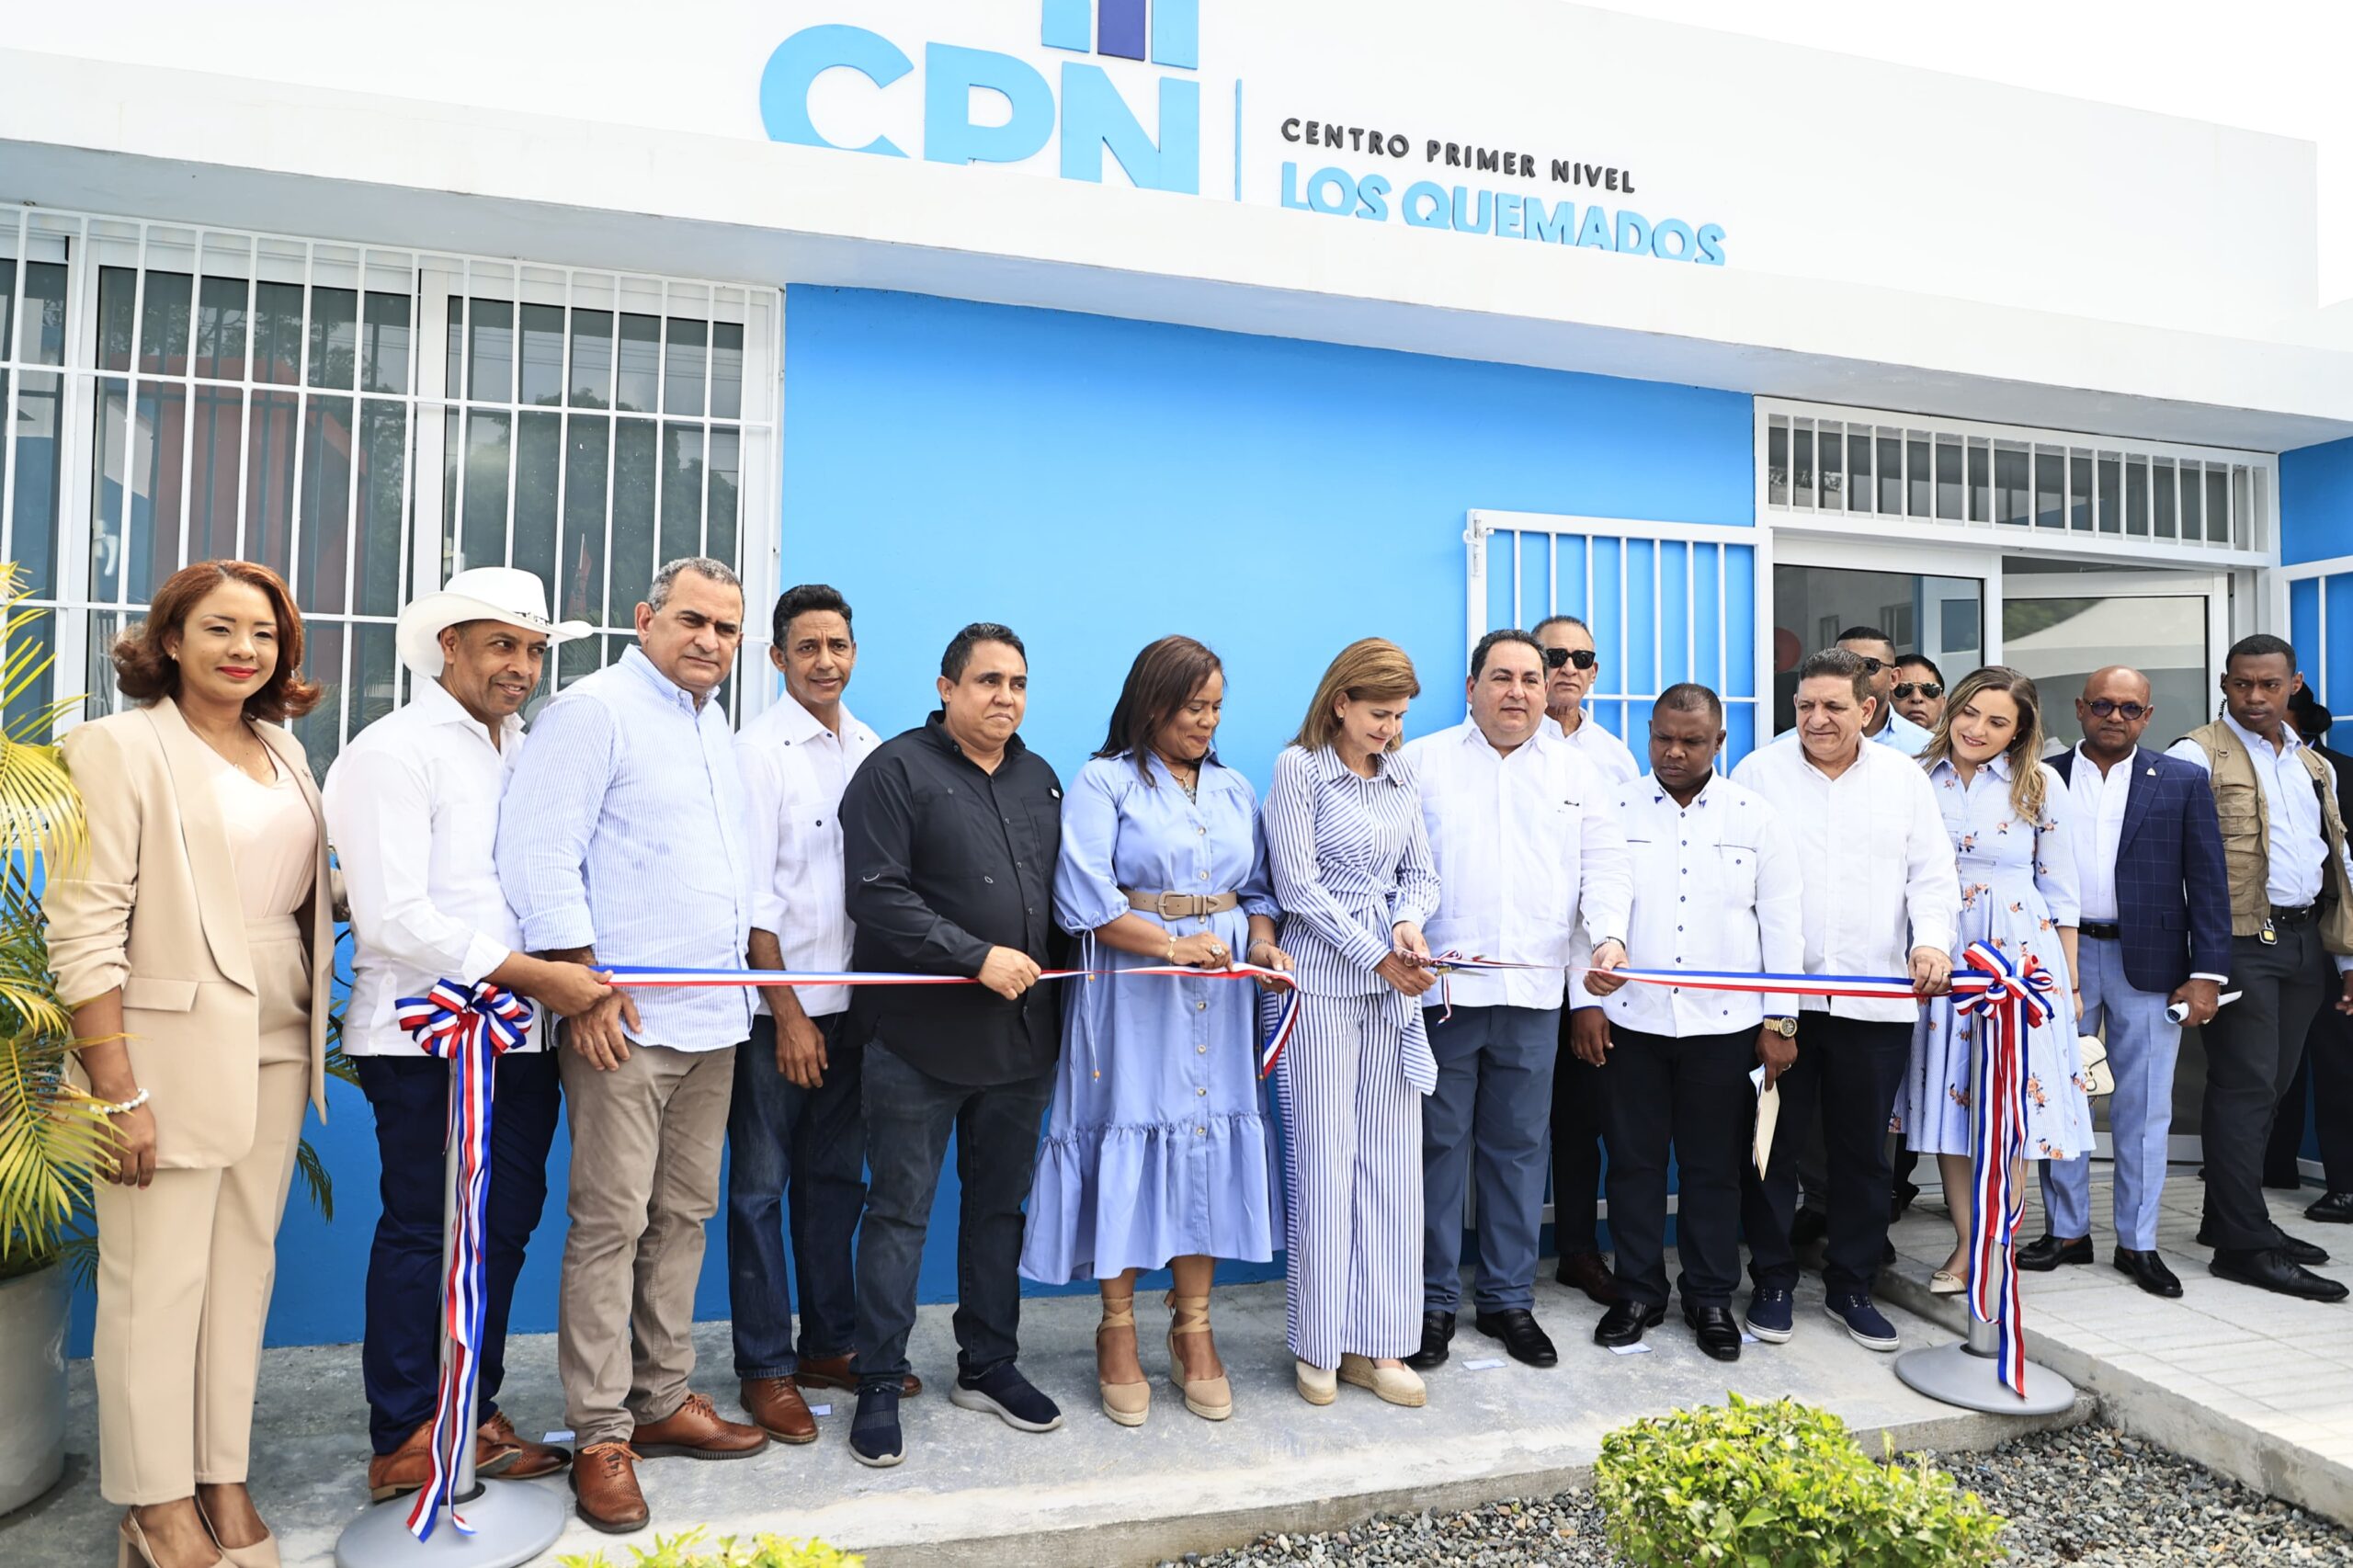 Vicepresidenta Raquel Peña entrega remozado Centro de Primer Nivel Los Quemados en Bonao